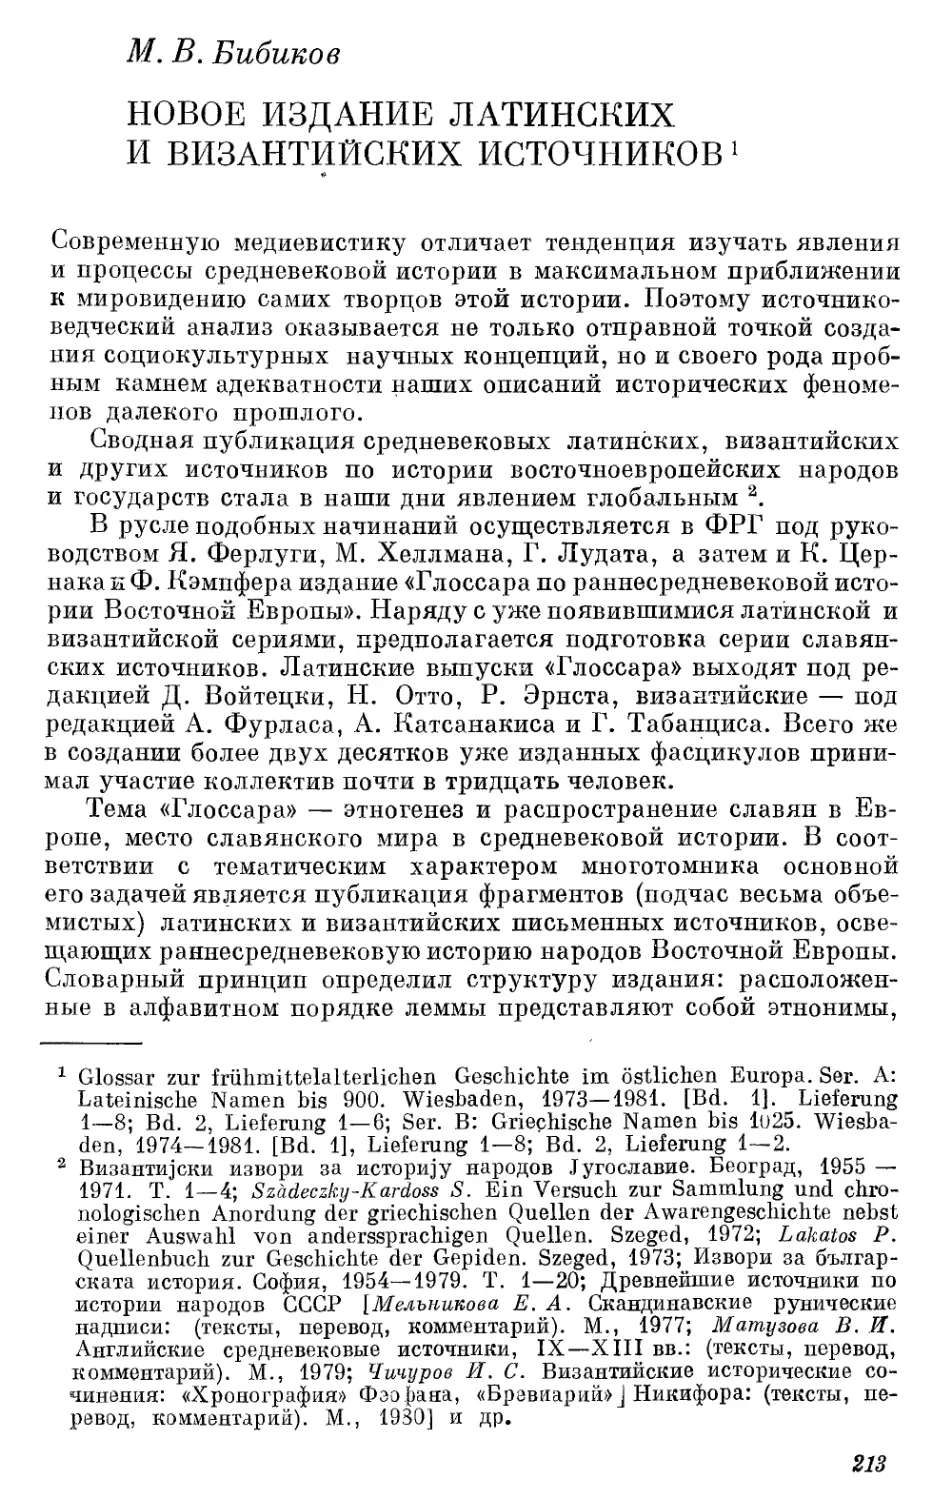 Бибиков М.В. Новое издание латинских и византийких источников